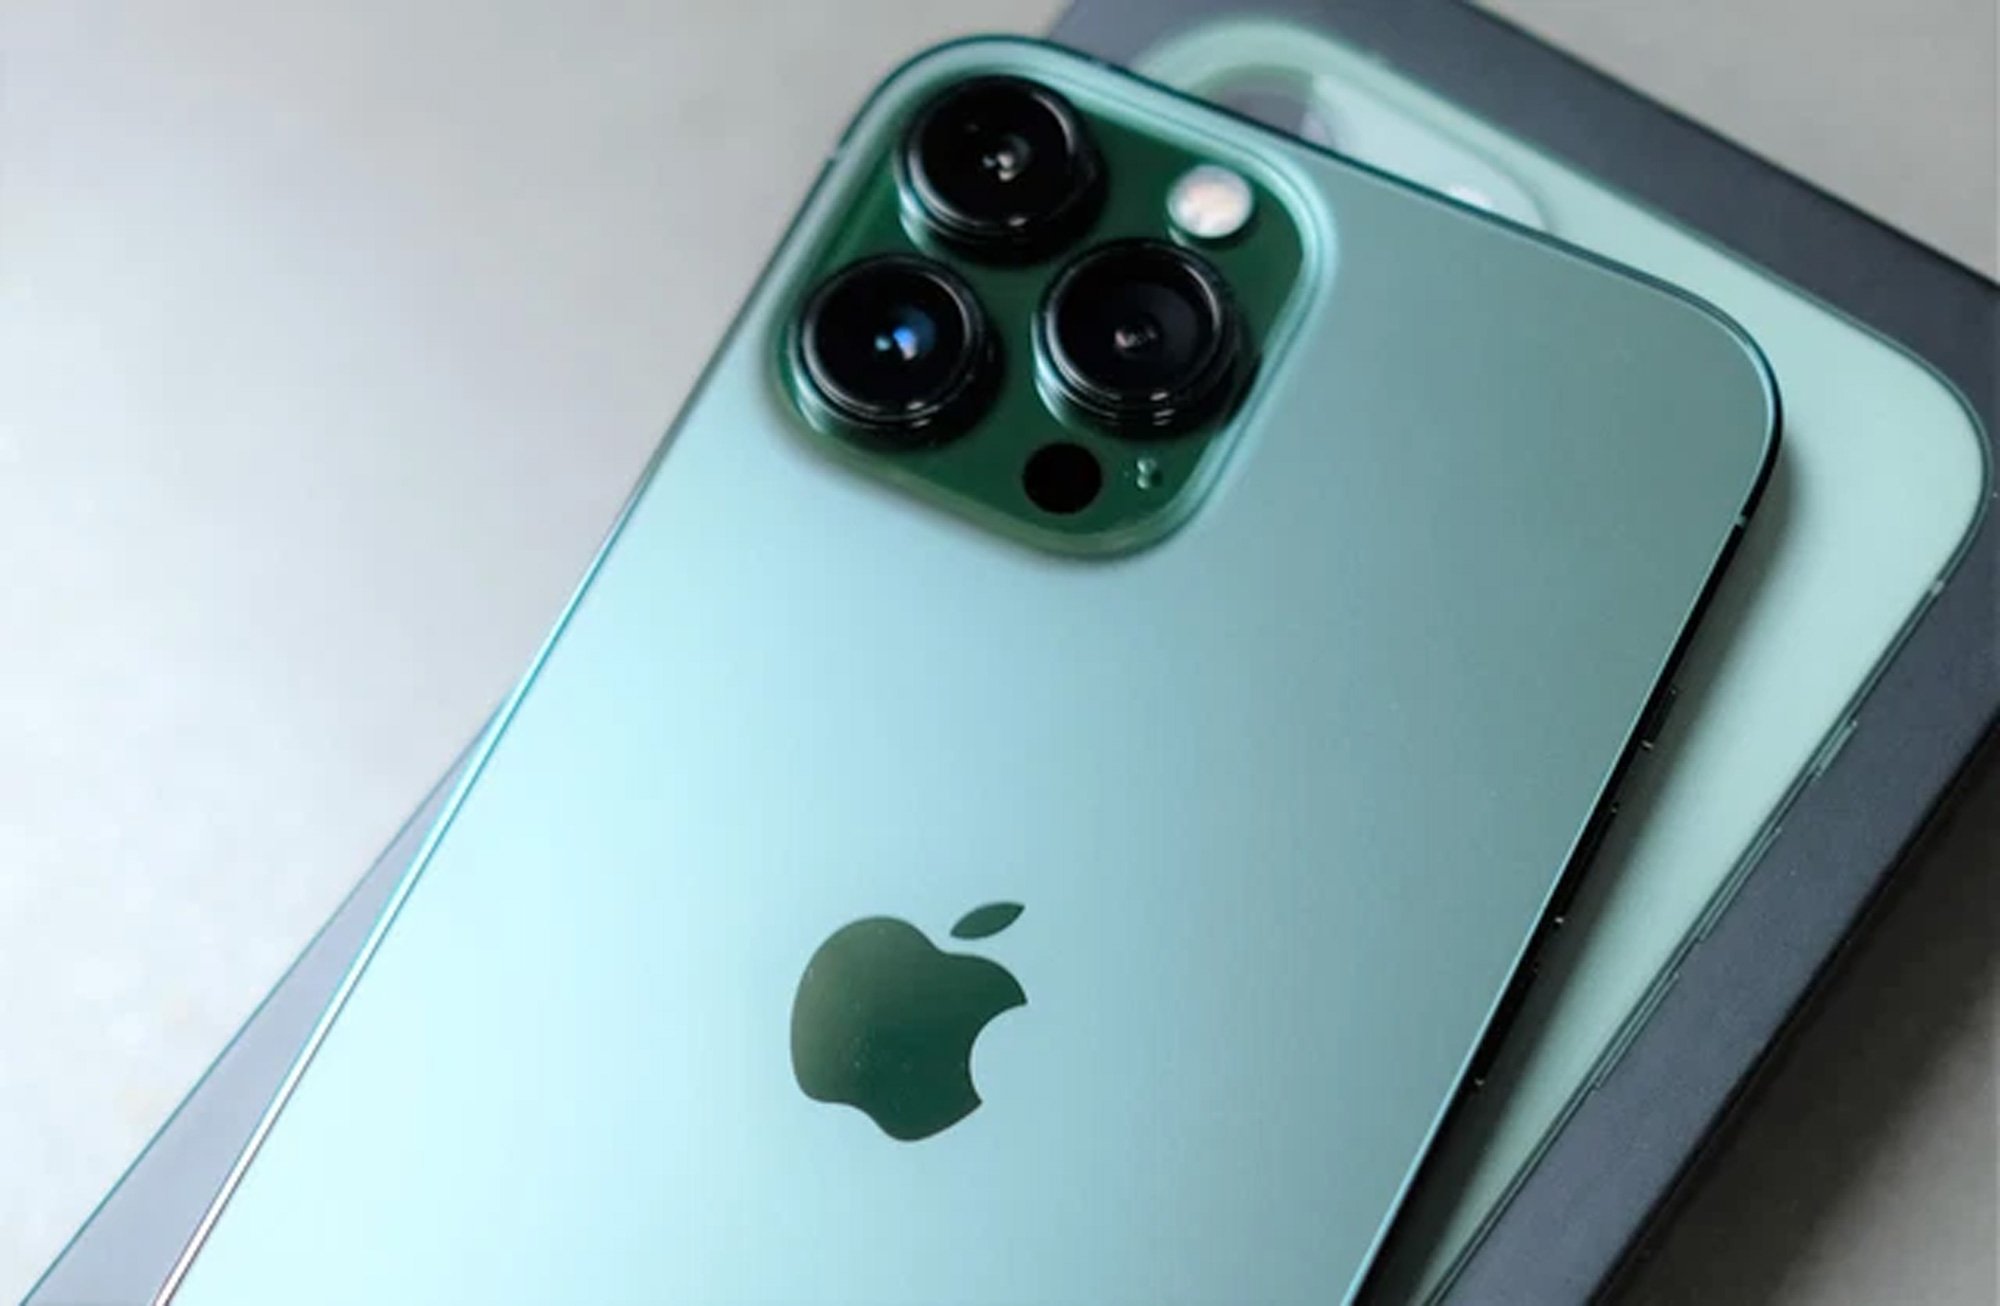 Chi tiết iPhone 13 Pro Max màu xanh mới về Việt Nam